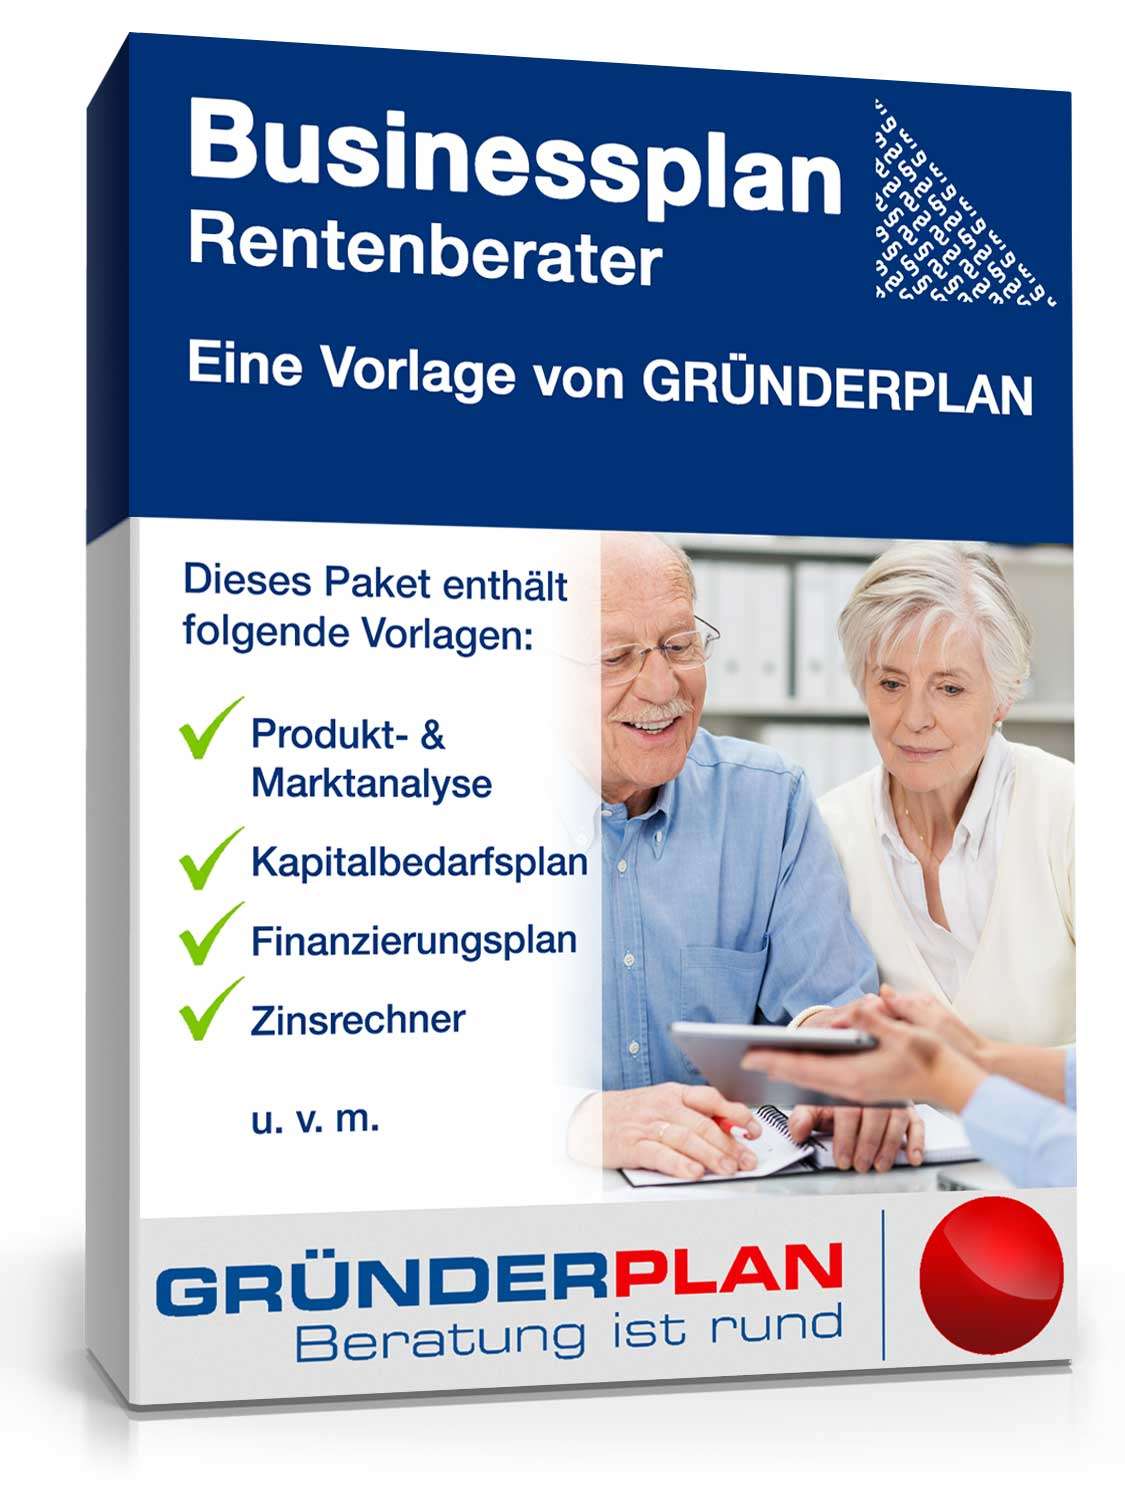 Hauptbild des Produkts: Businessplan Rentenberater von Gründerplan